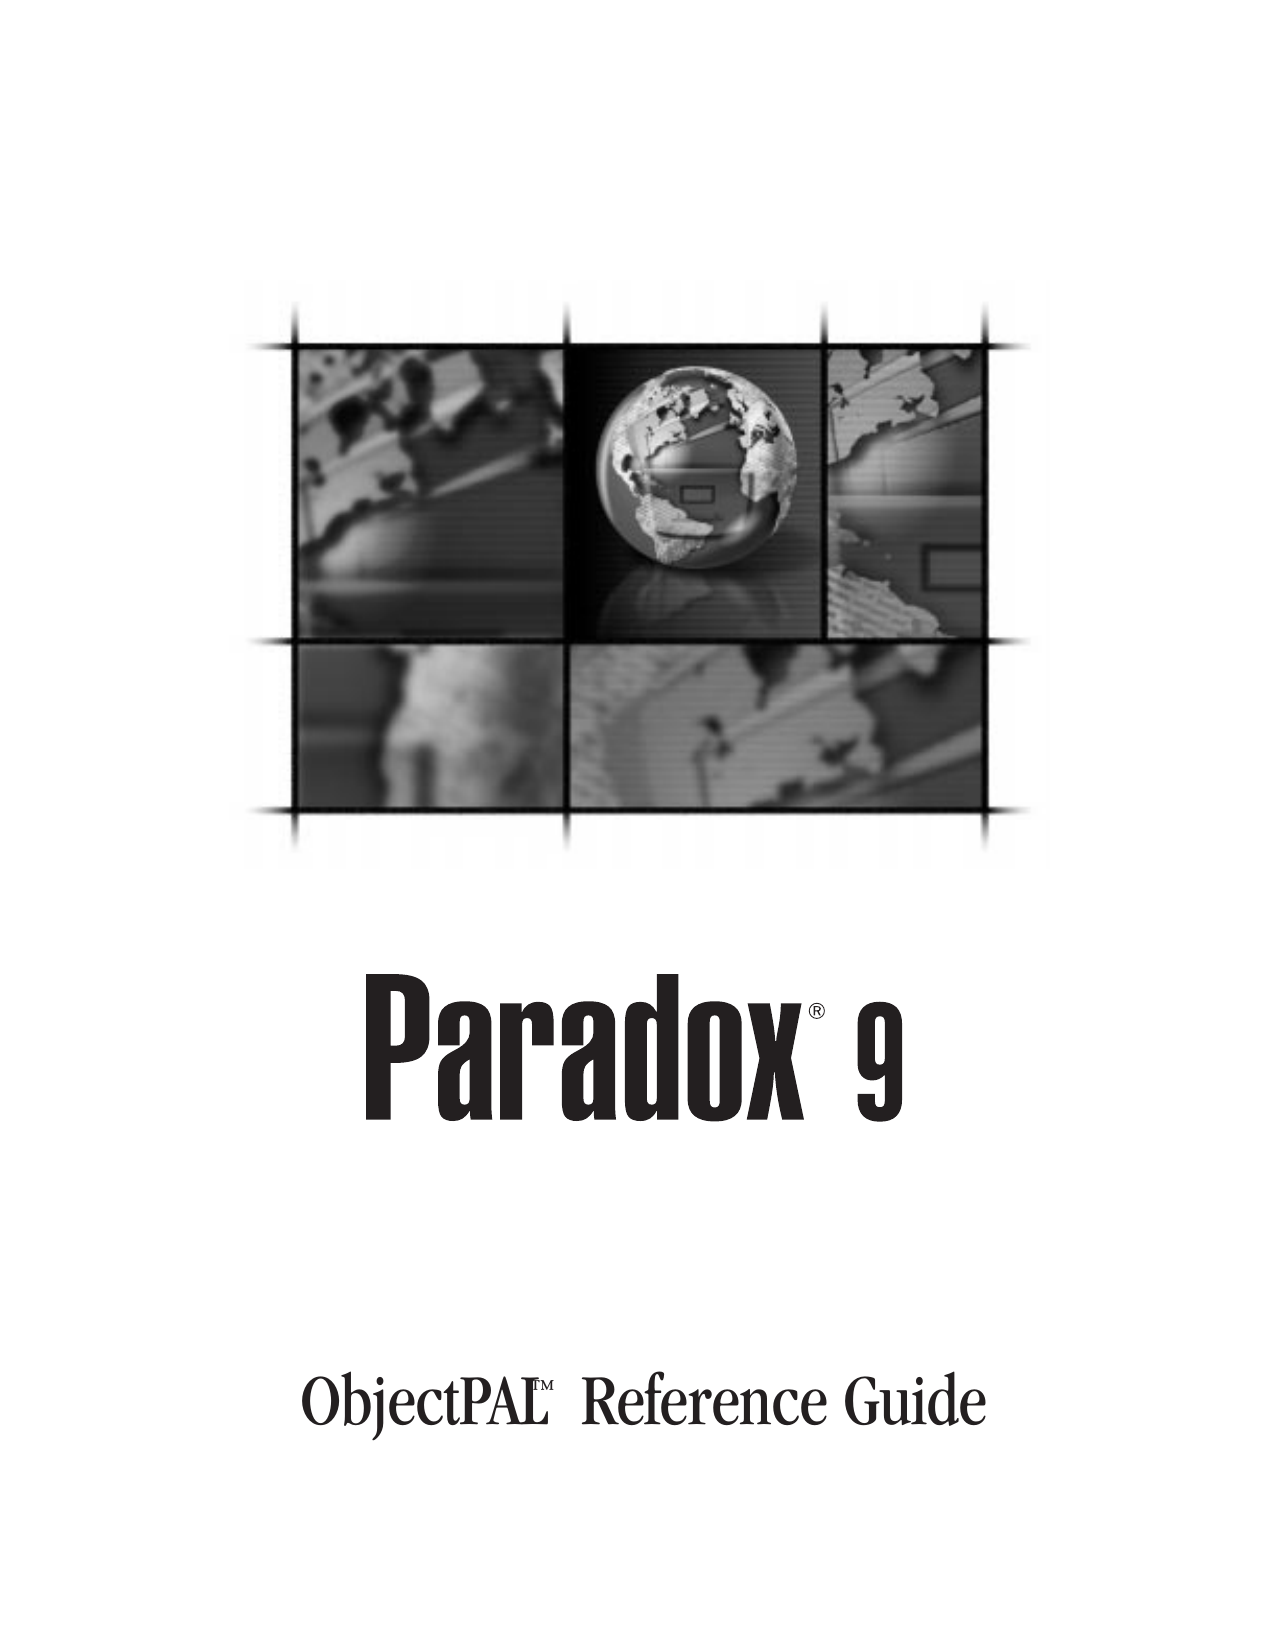 corel paradox error in report